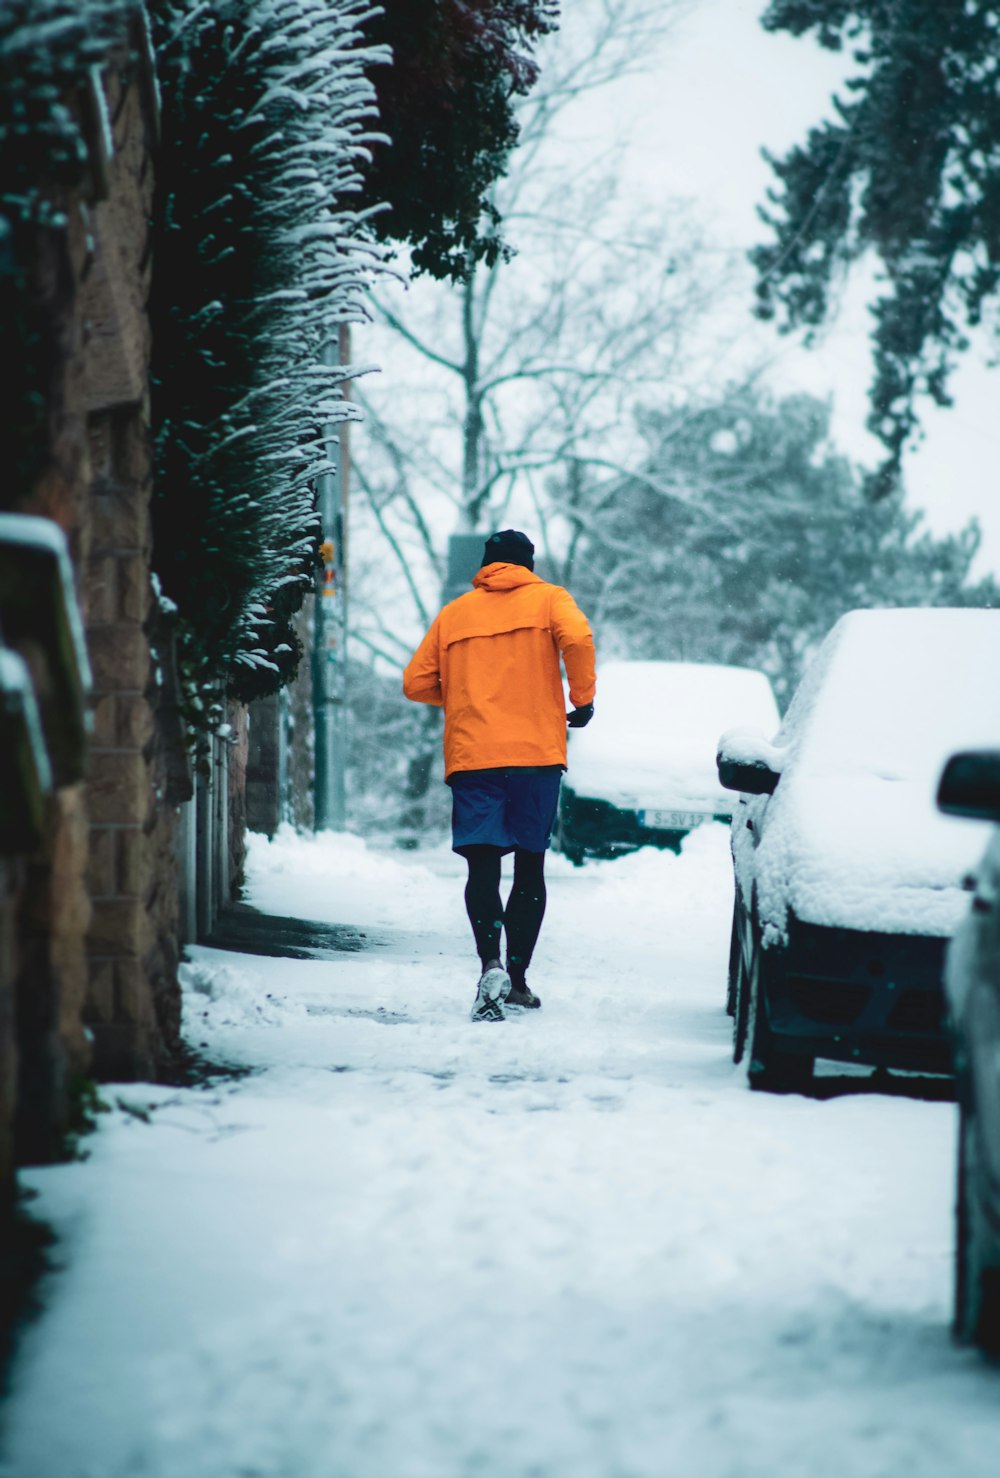 日中に雪に覆われた小道を歩くオレンジ色のパーカーを着た人